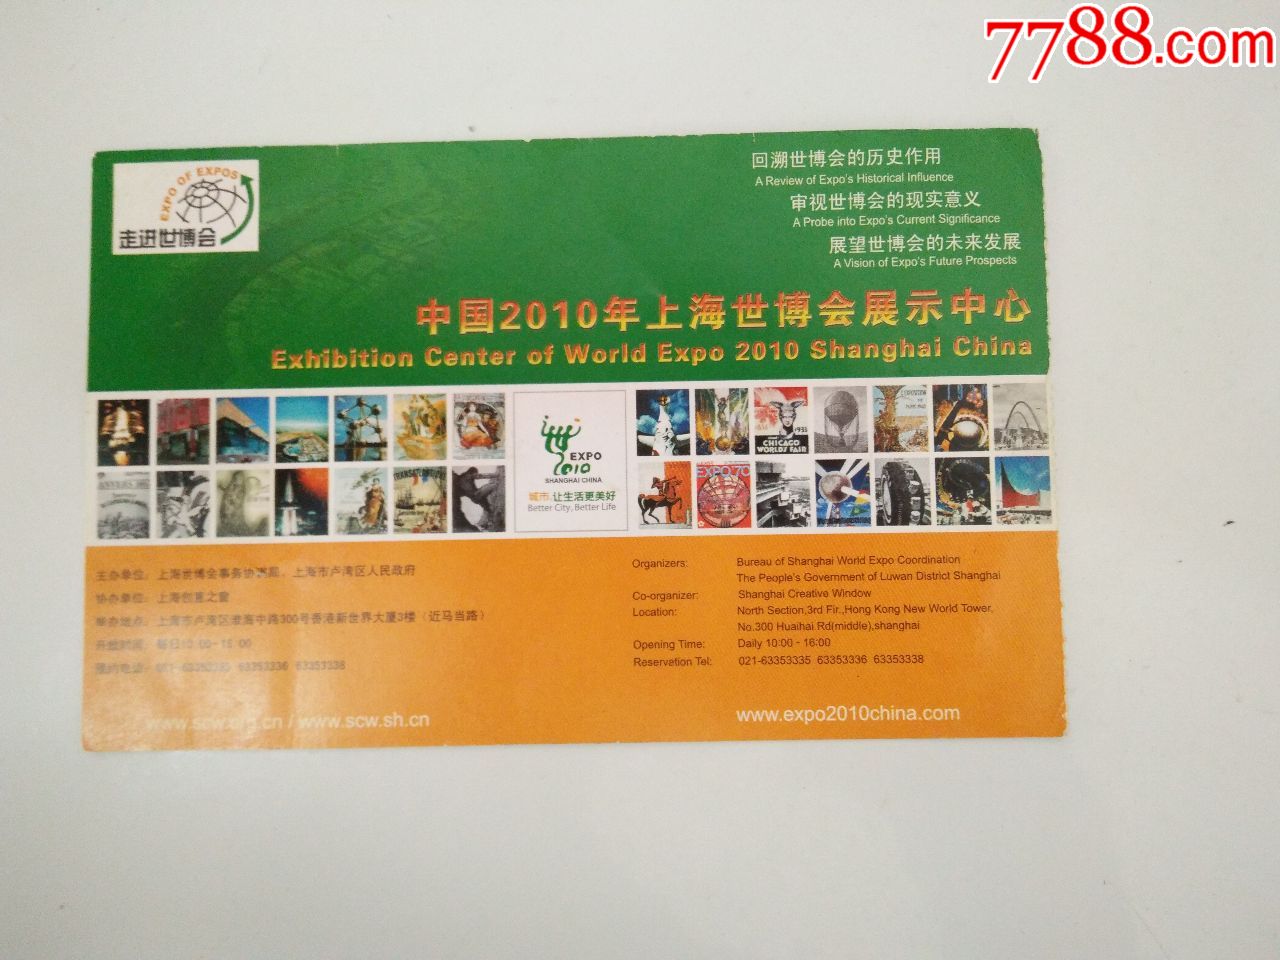 中国2010年上海世博会展示中心门票